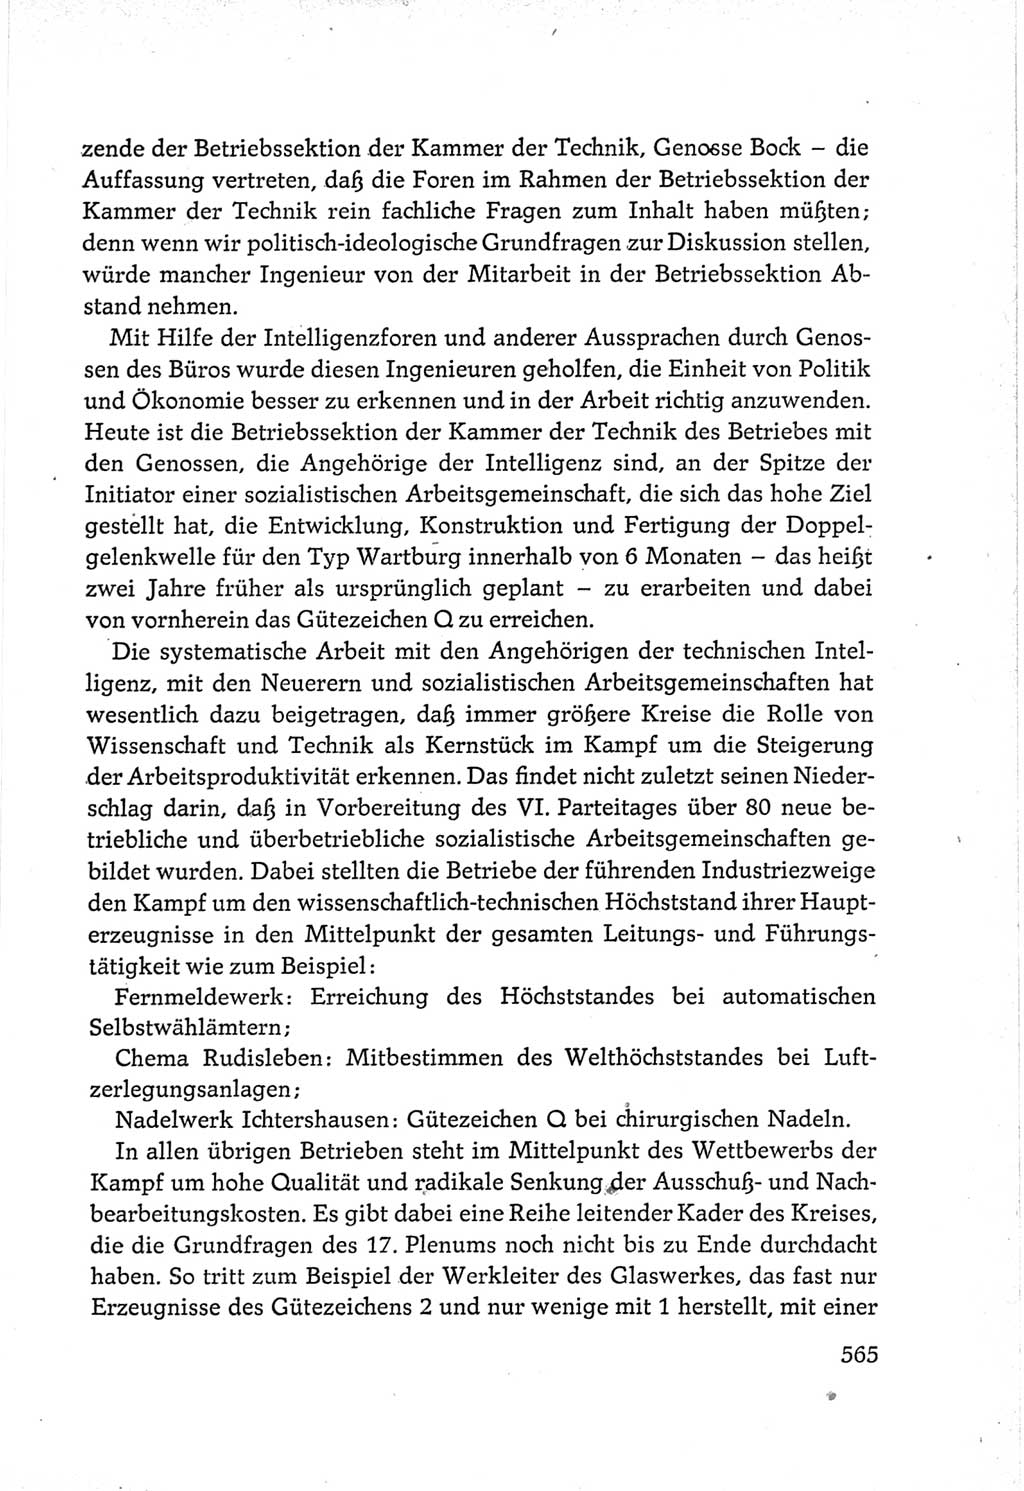 Protokoll der Verhandlungen des Ⅵ. Parteitages der Sozialistischen Einheitspartei Deutschlands (SED) [Deutsche Demokratische Republik (DDR)] 1963, Band Ⅲ, Seite 565 (Prot. Verh. Ⅵ. PT SED DDR 1963, Bd. Ⅲ, S. 565)